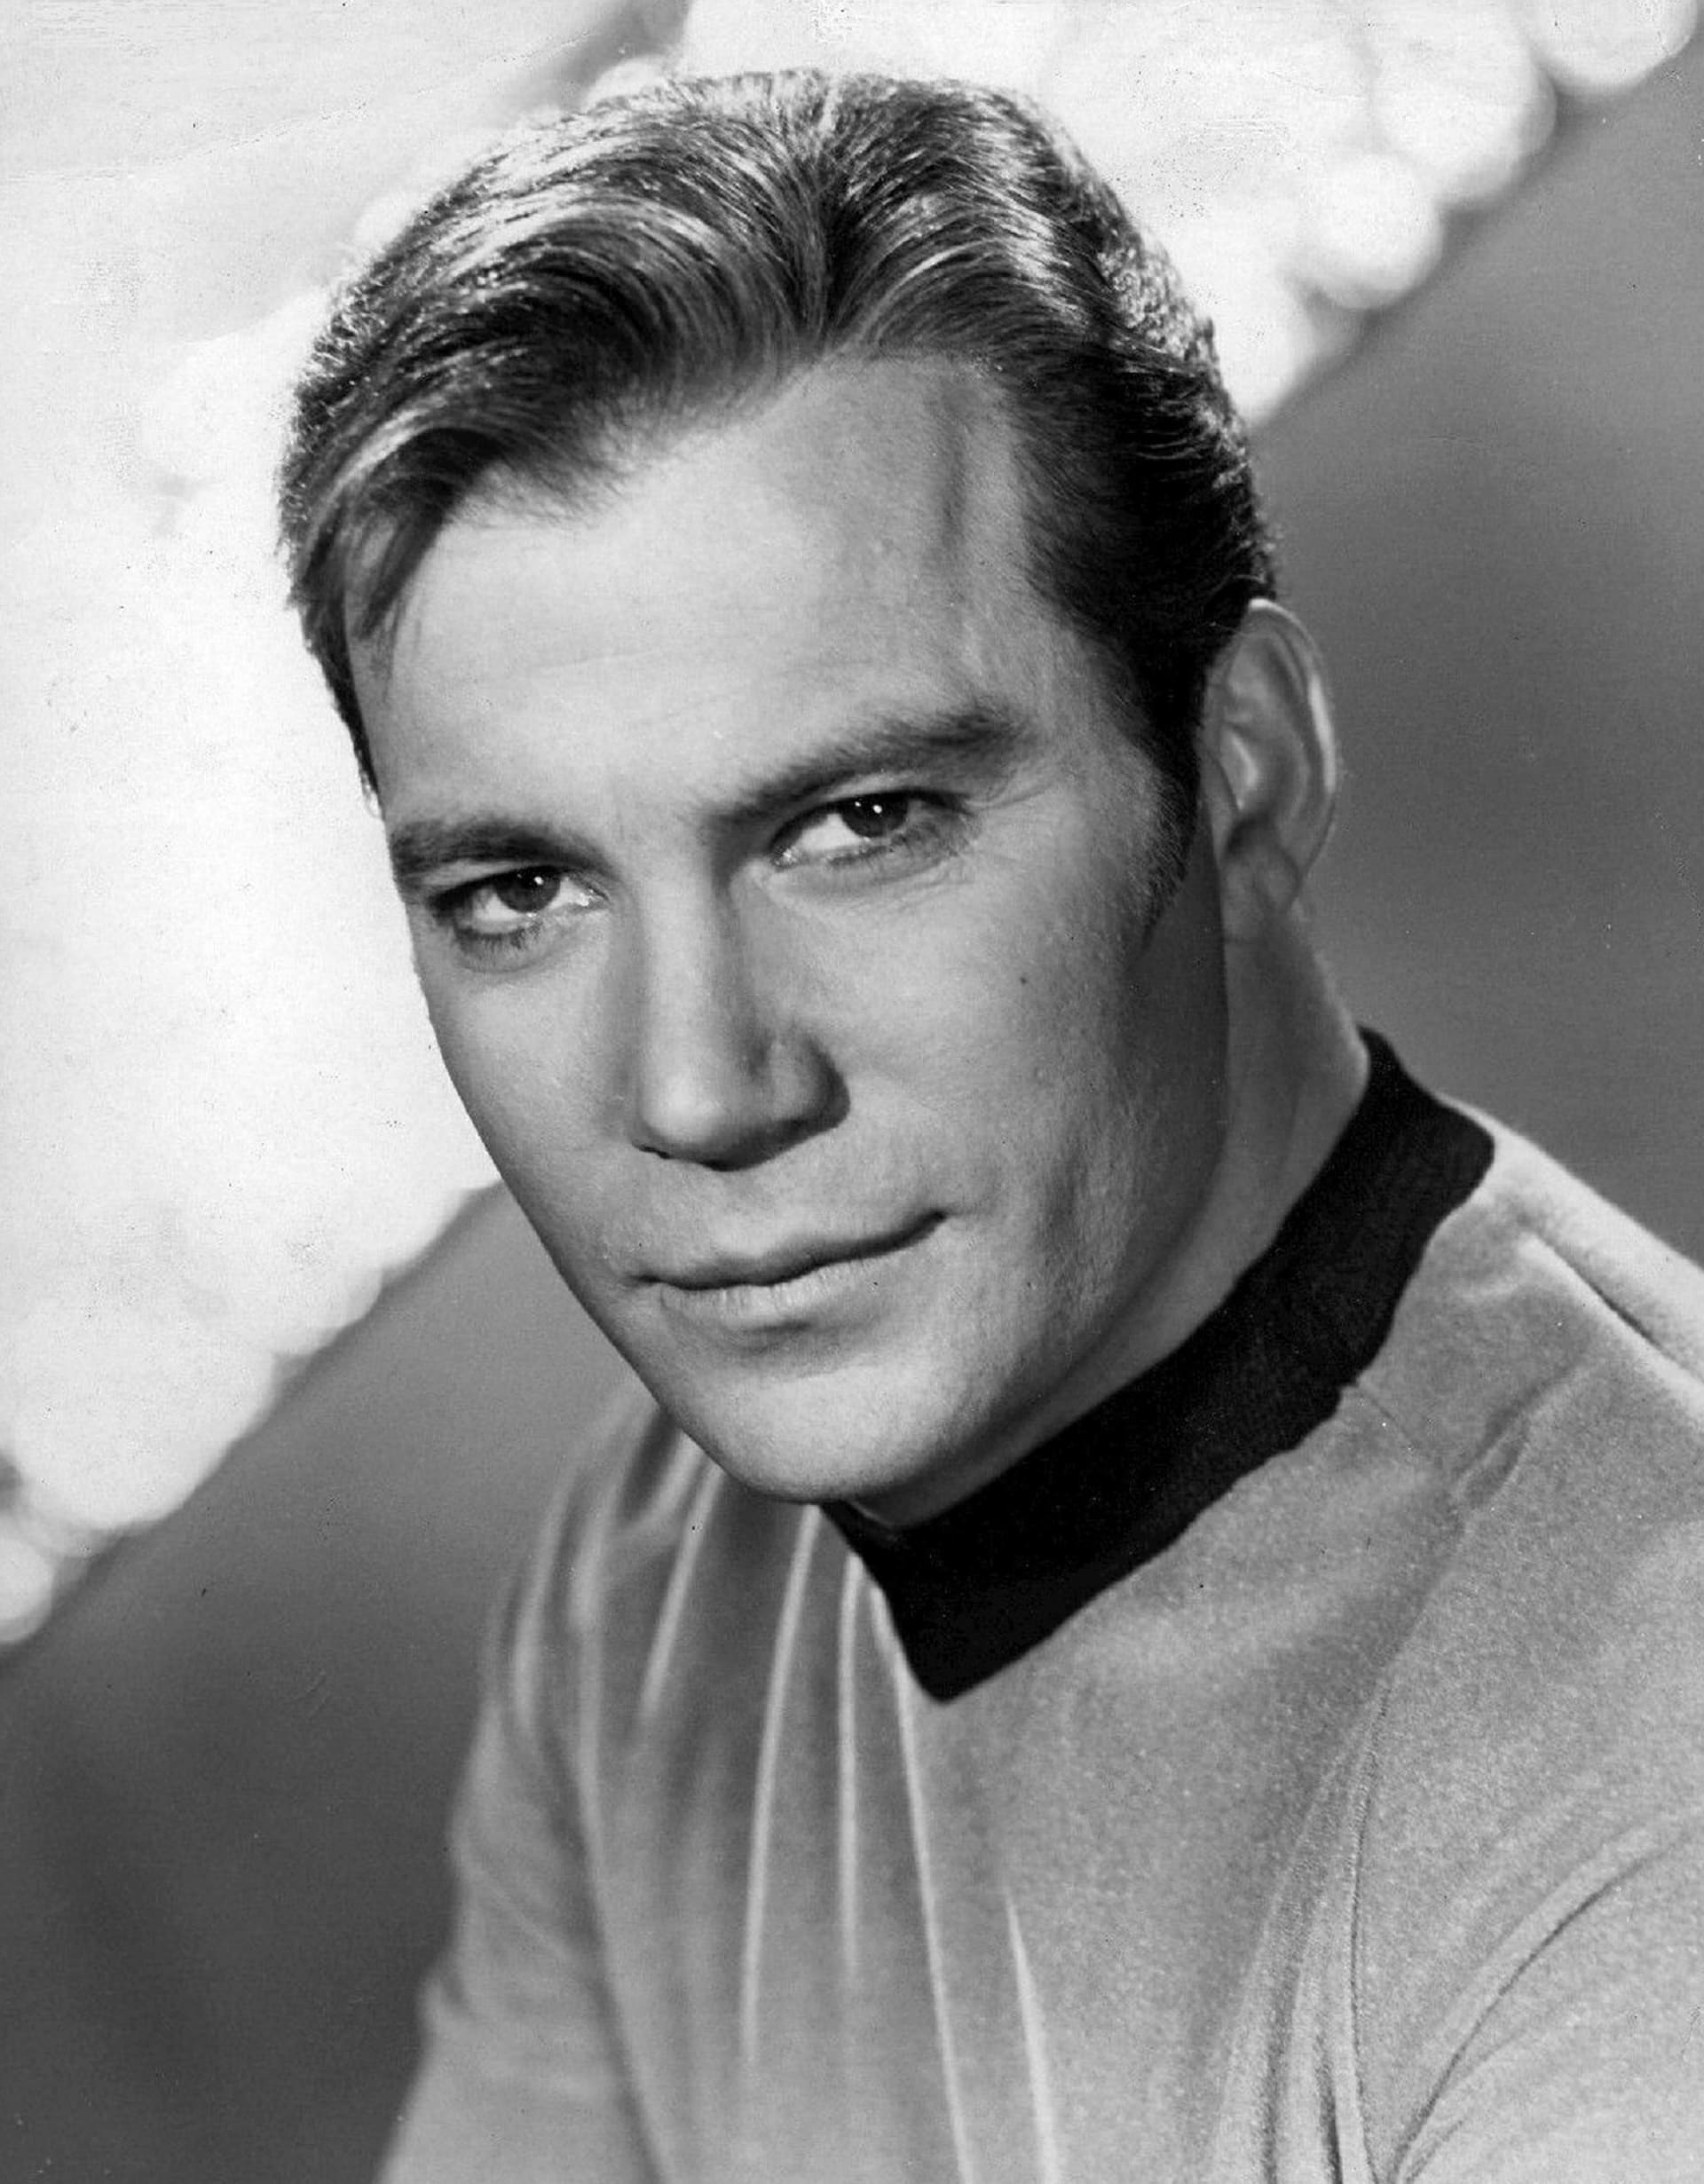  Bizarní zatčení neozbrojené ženy v kostýmu okomentoval i herec William Shatner známý jako James T. Kirk ze Star Treku.